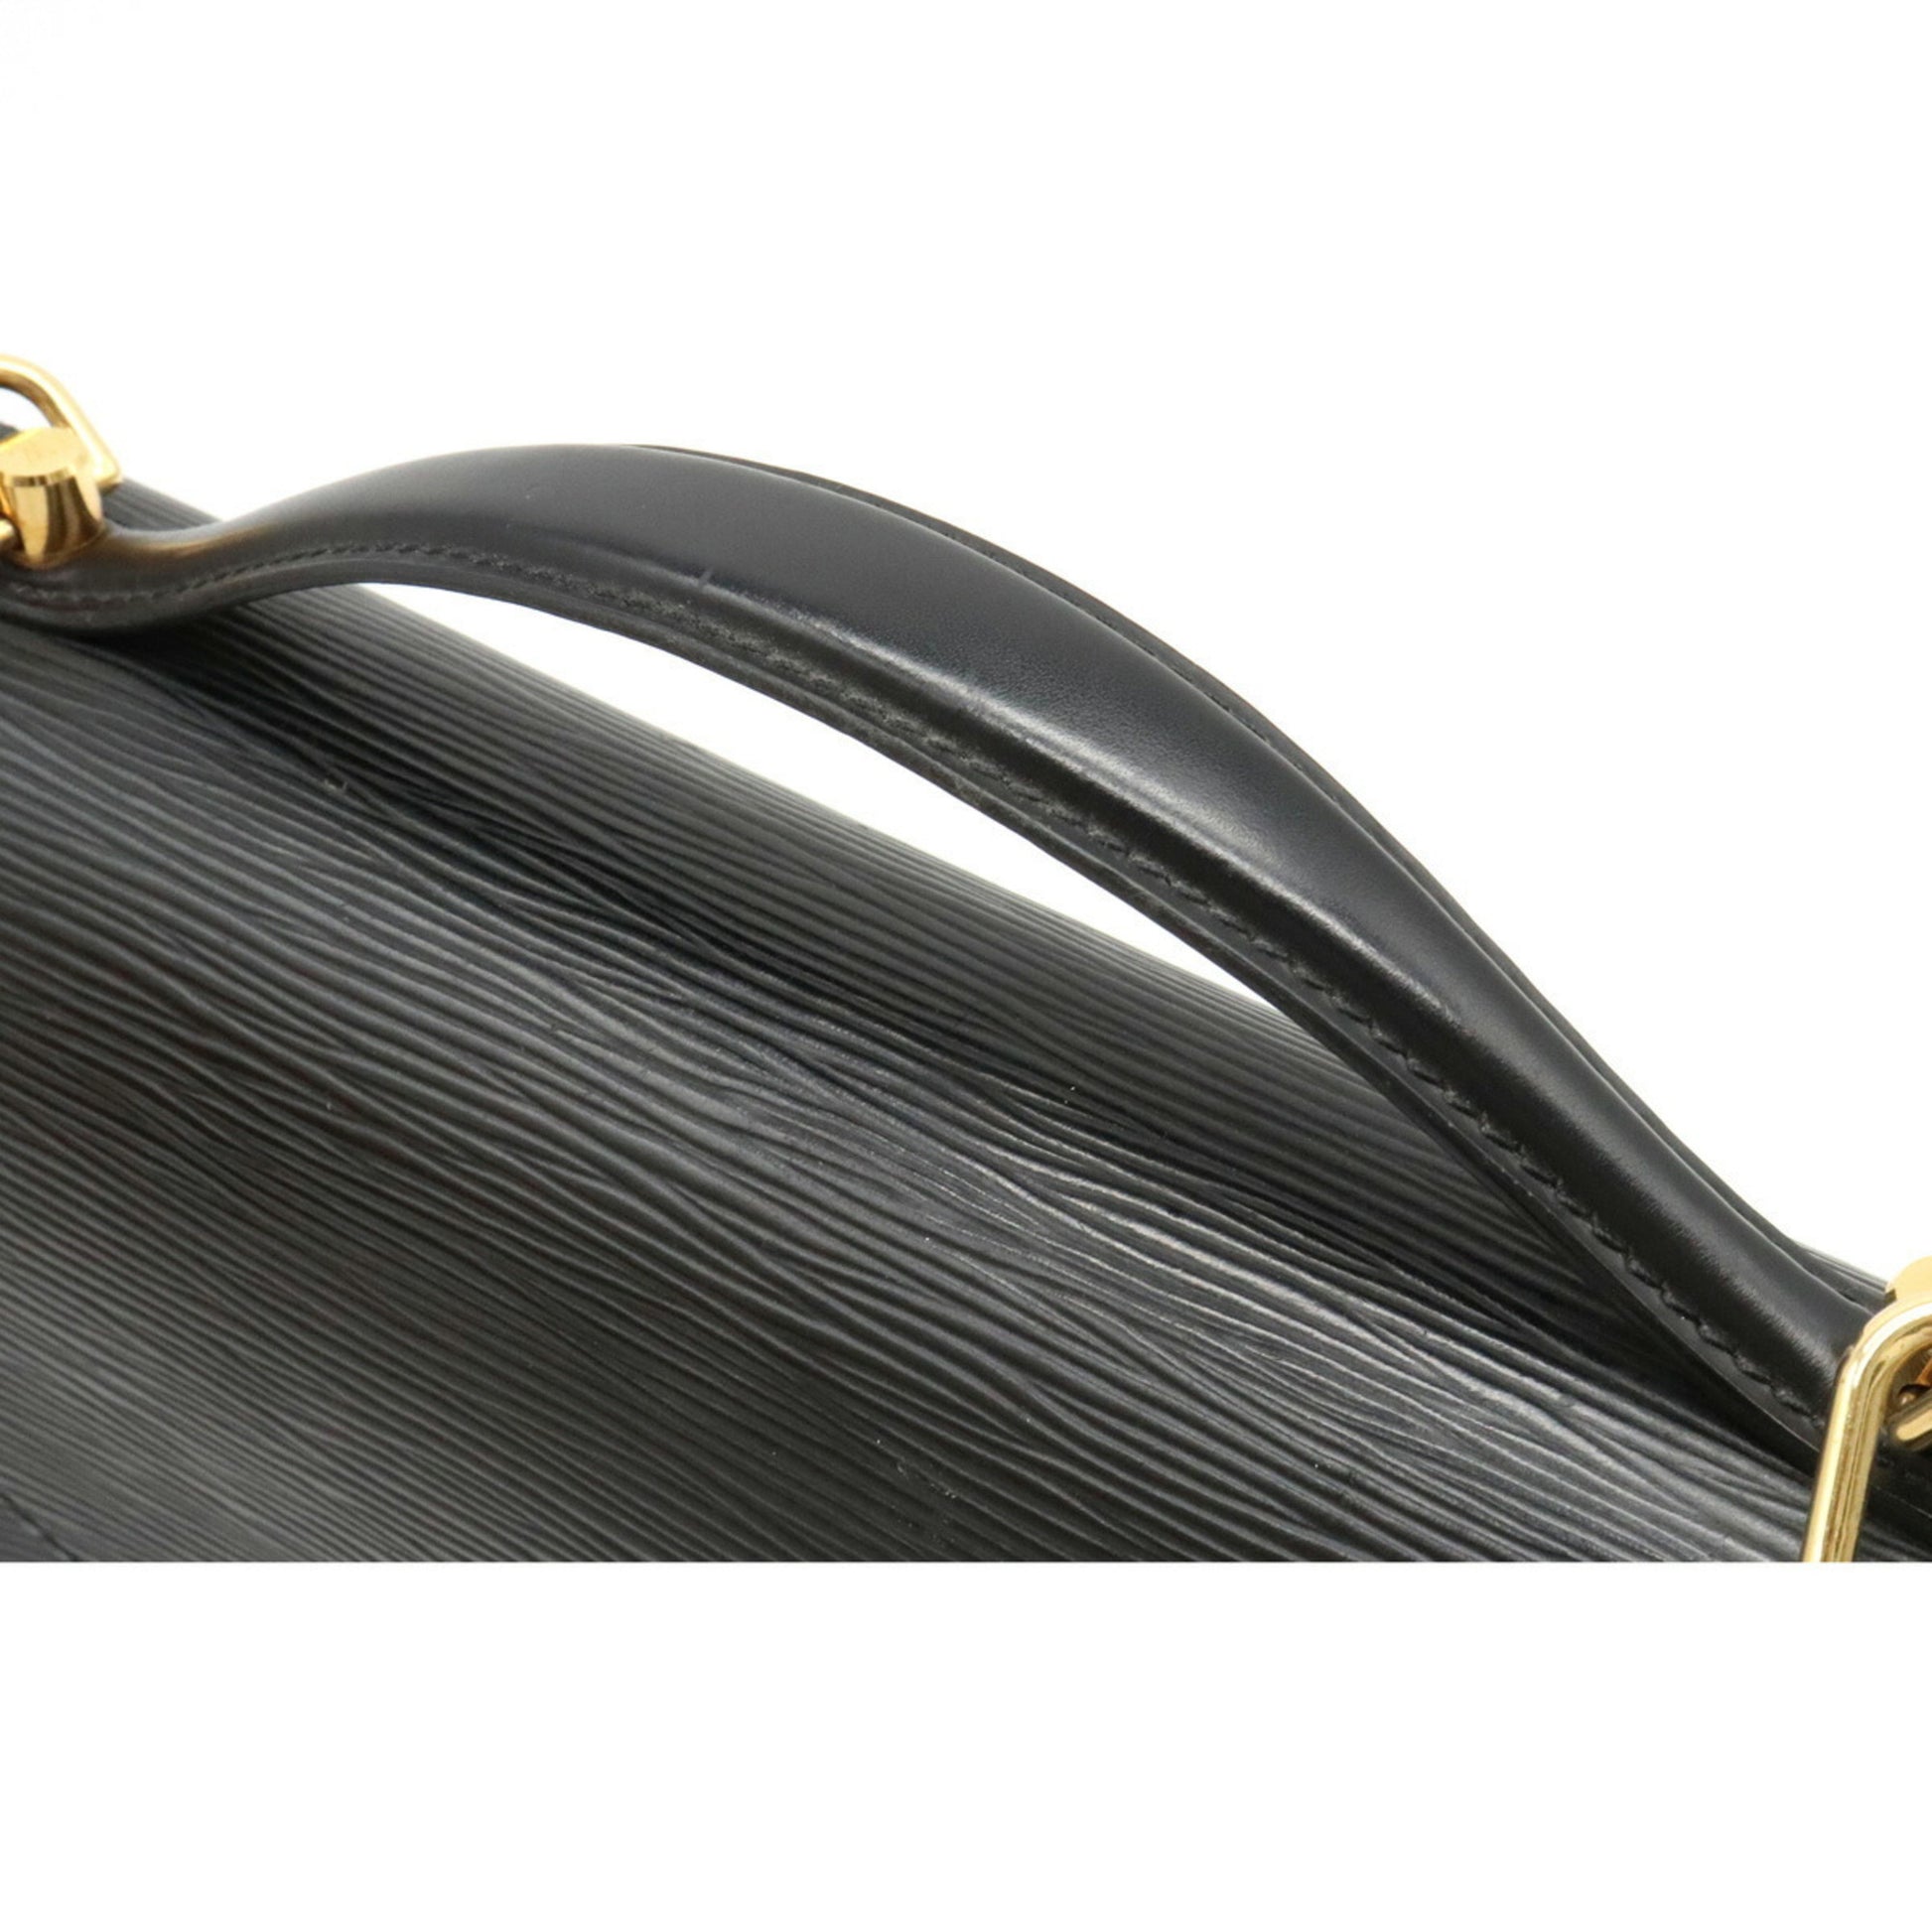 LOUIS VUITTON Handbag M52122 Monceau 28 2WAY Epi Leather Black Noir Women  Used